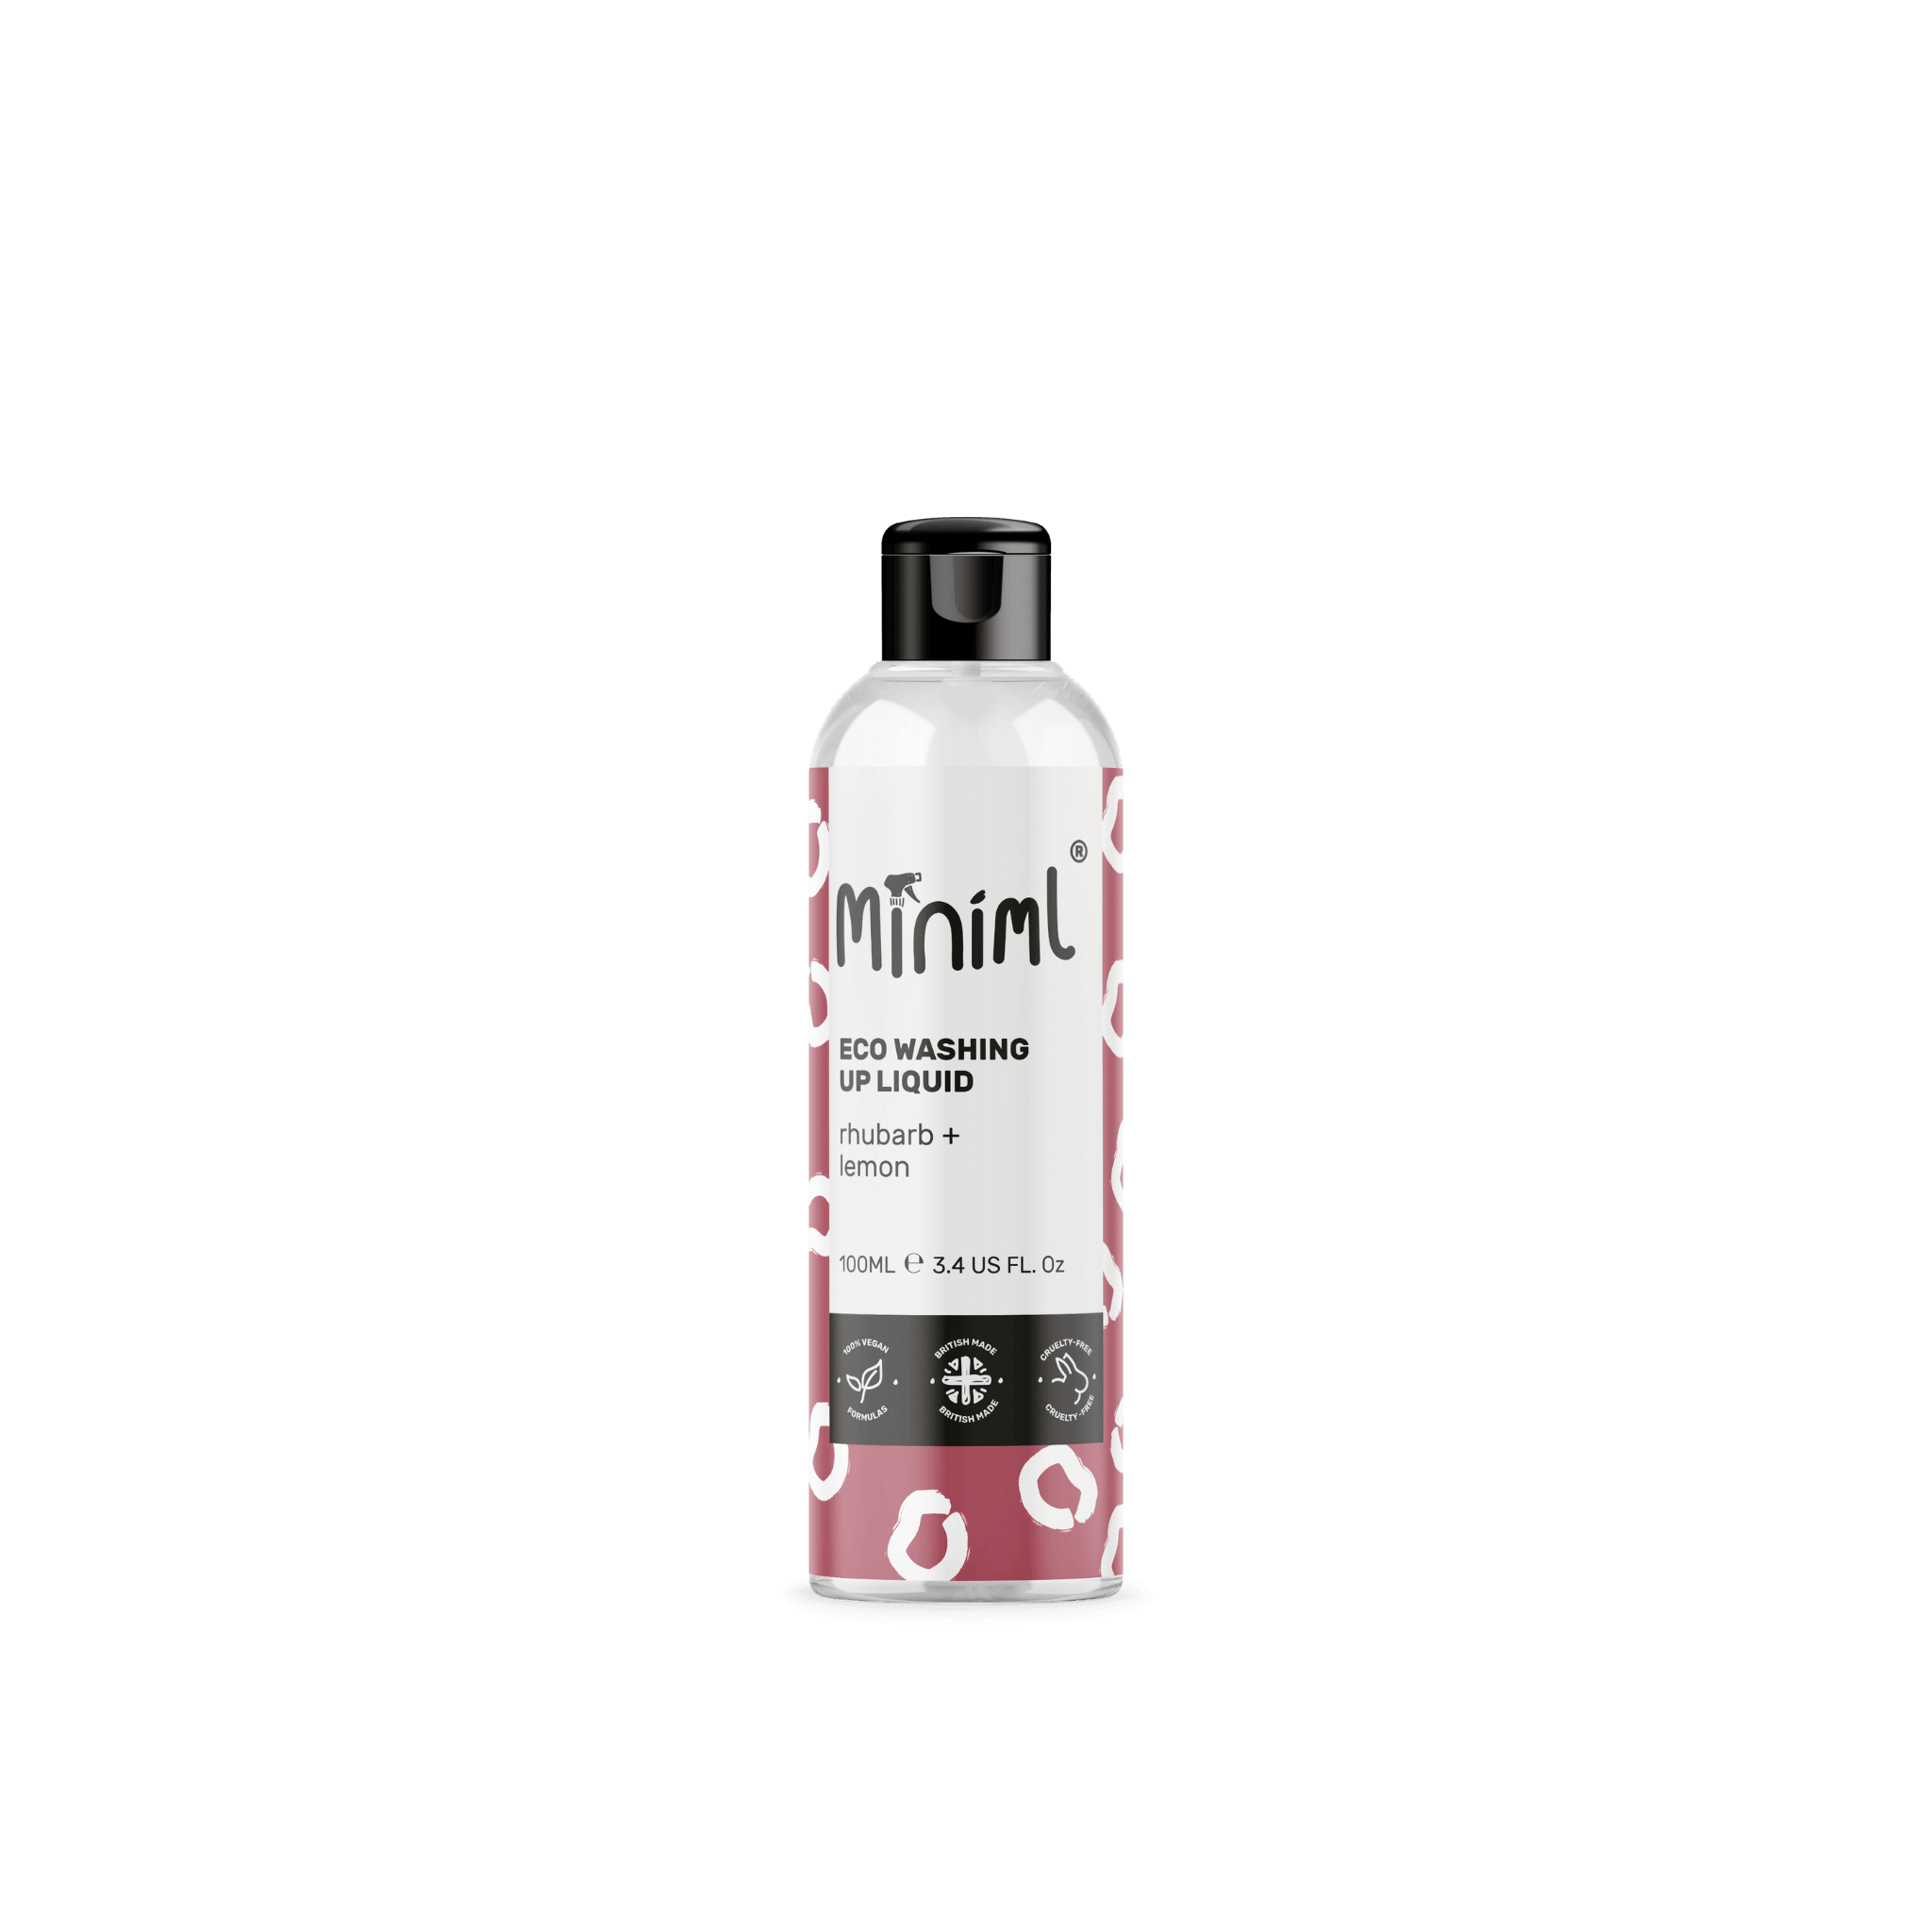 Miniml - Eco Friendly- Washing Up Liquid - Rhubarb + Lemon - 100ml - Vending Superstore